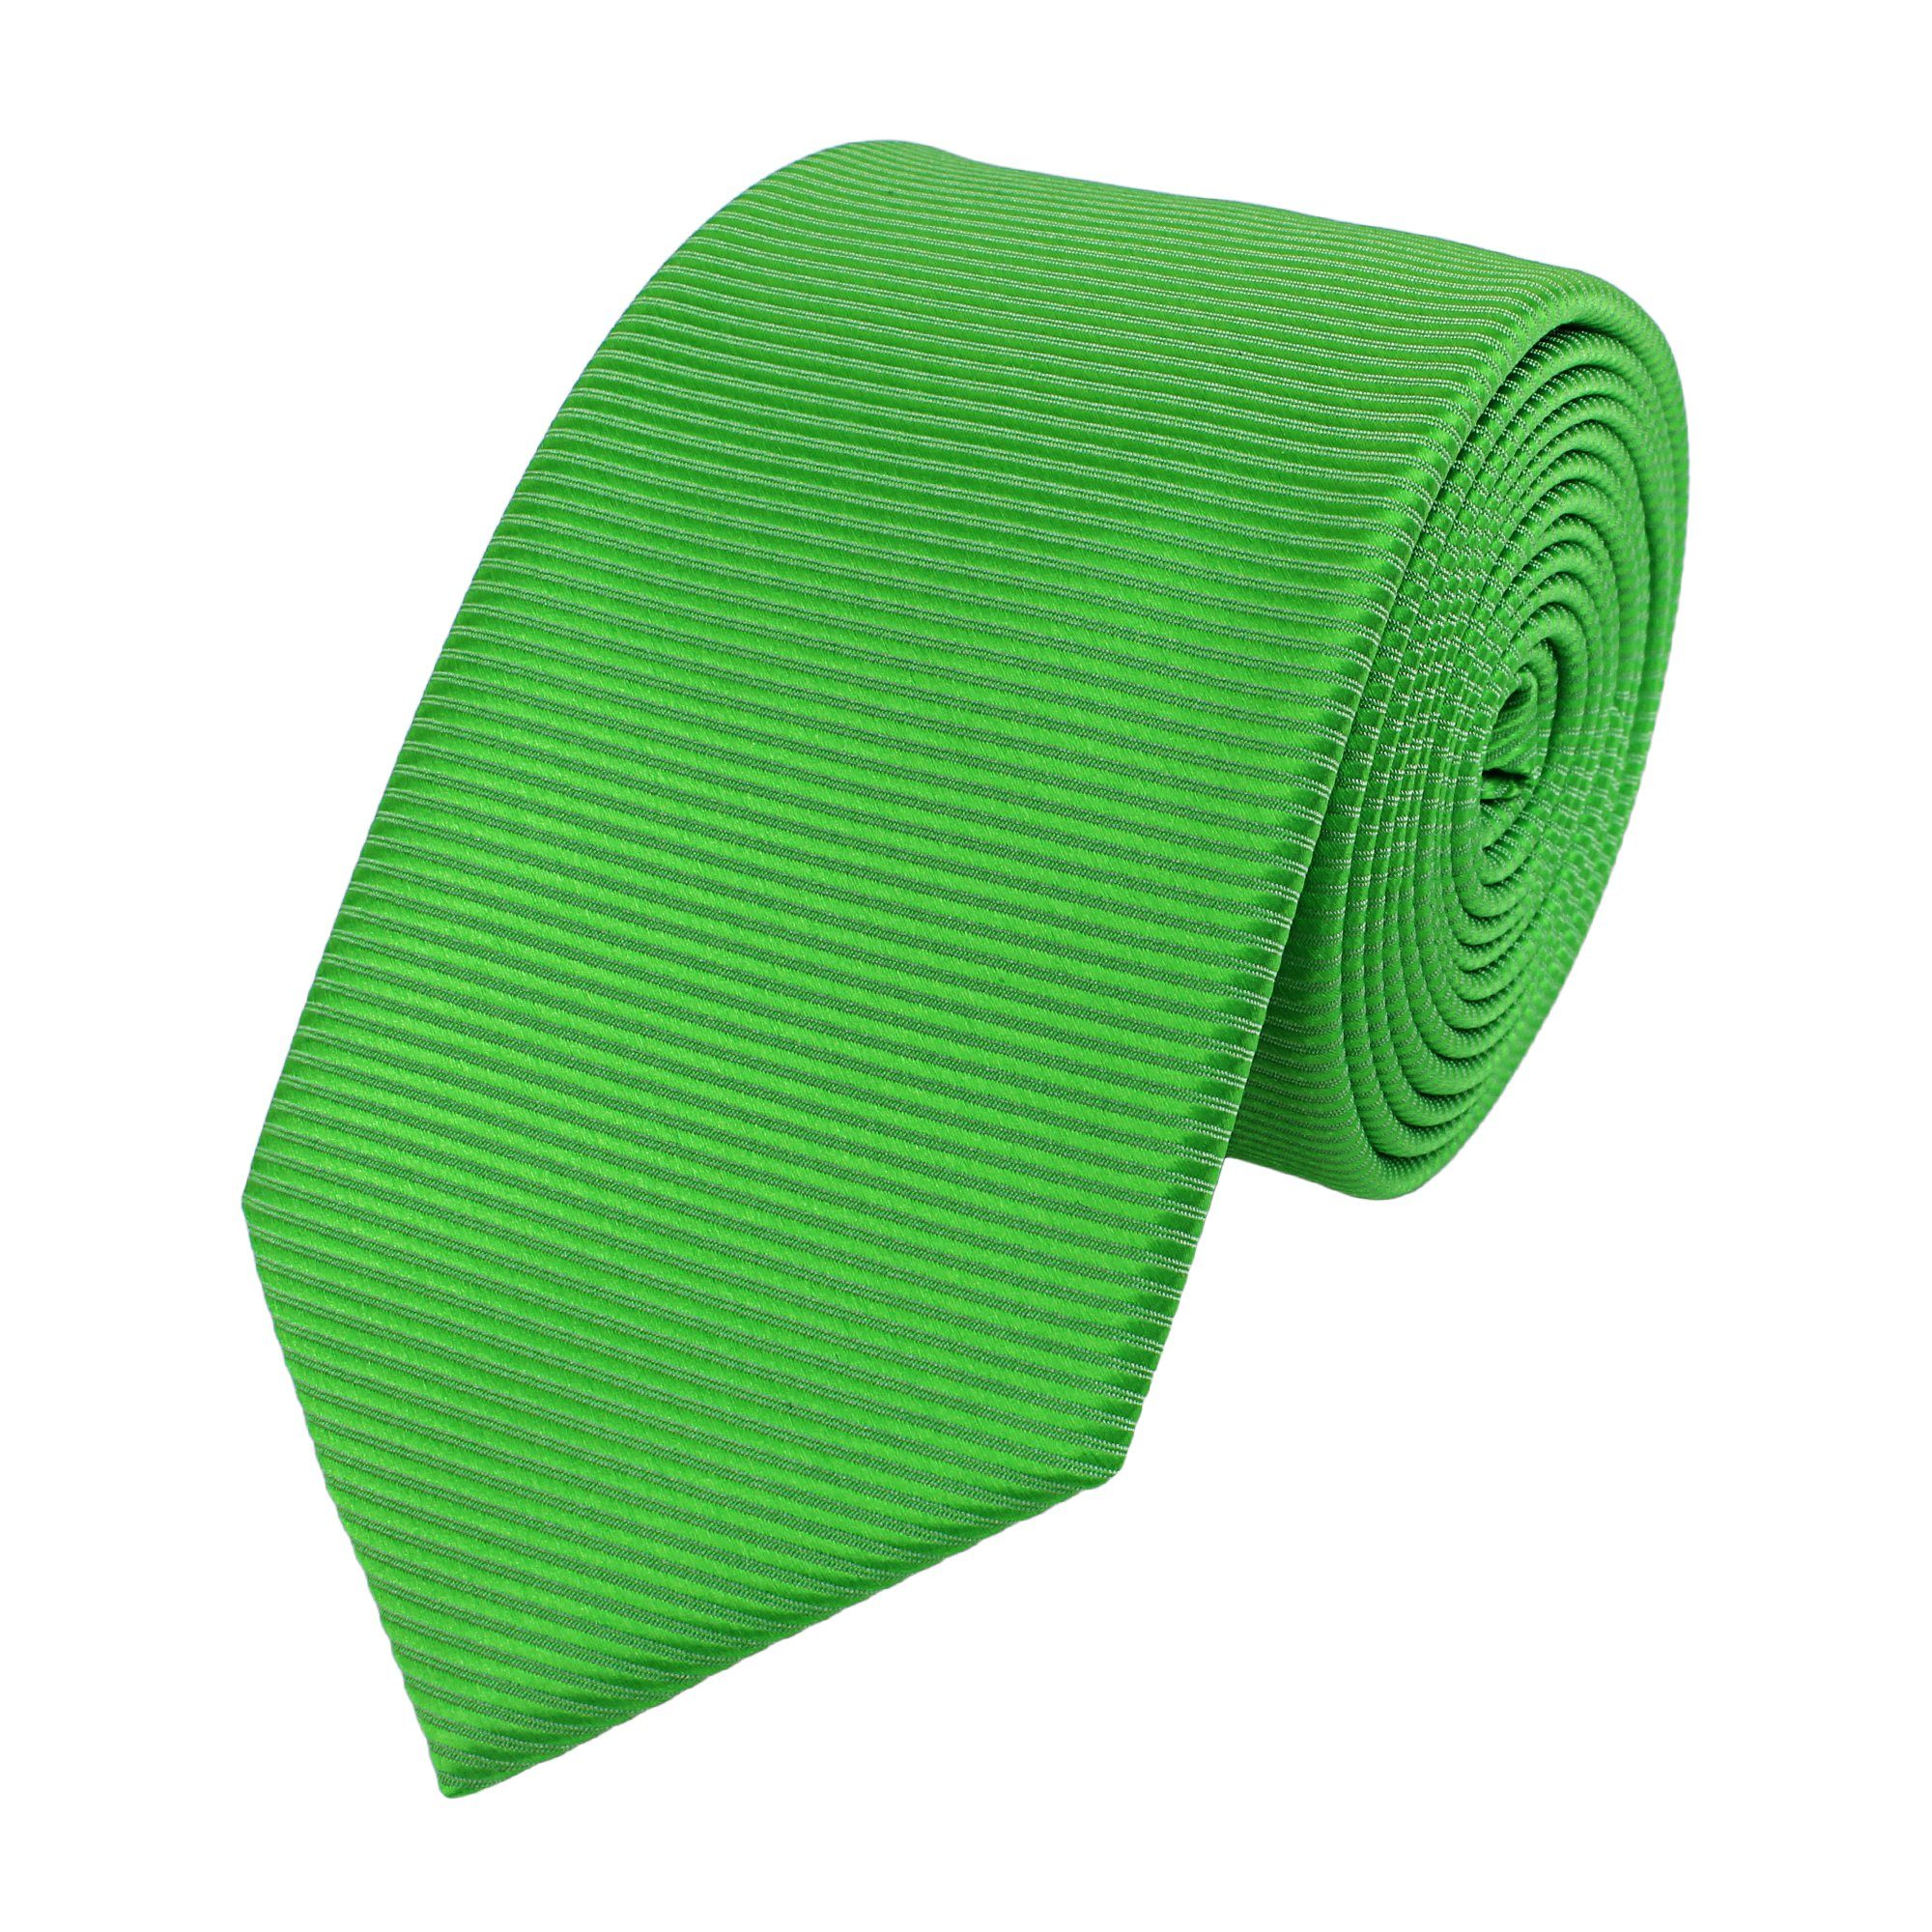 Schlips (ohne Gestreift) (6cm), Grün - Schmal in Grün Krawatte gestreift Farbton Fabio Grüne Krawatten Box, Farini Herren 6cm mit